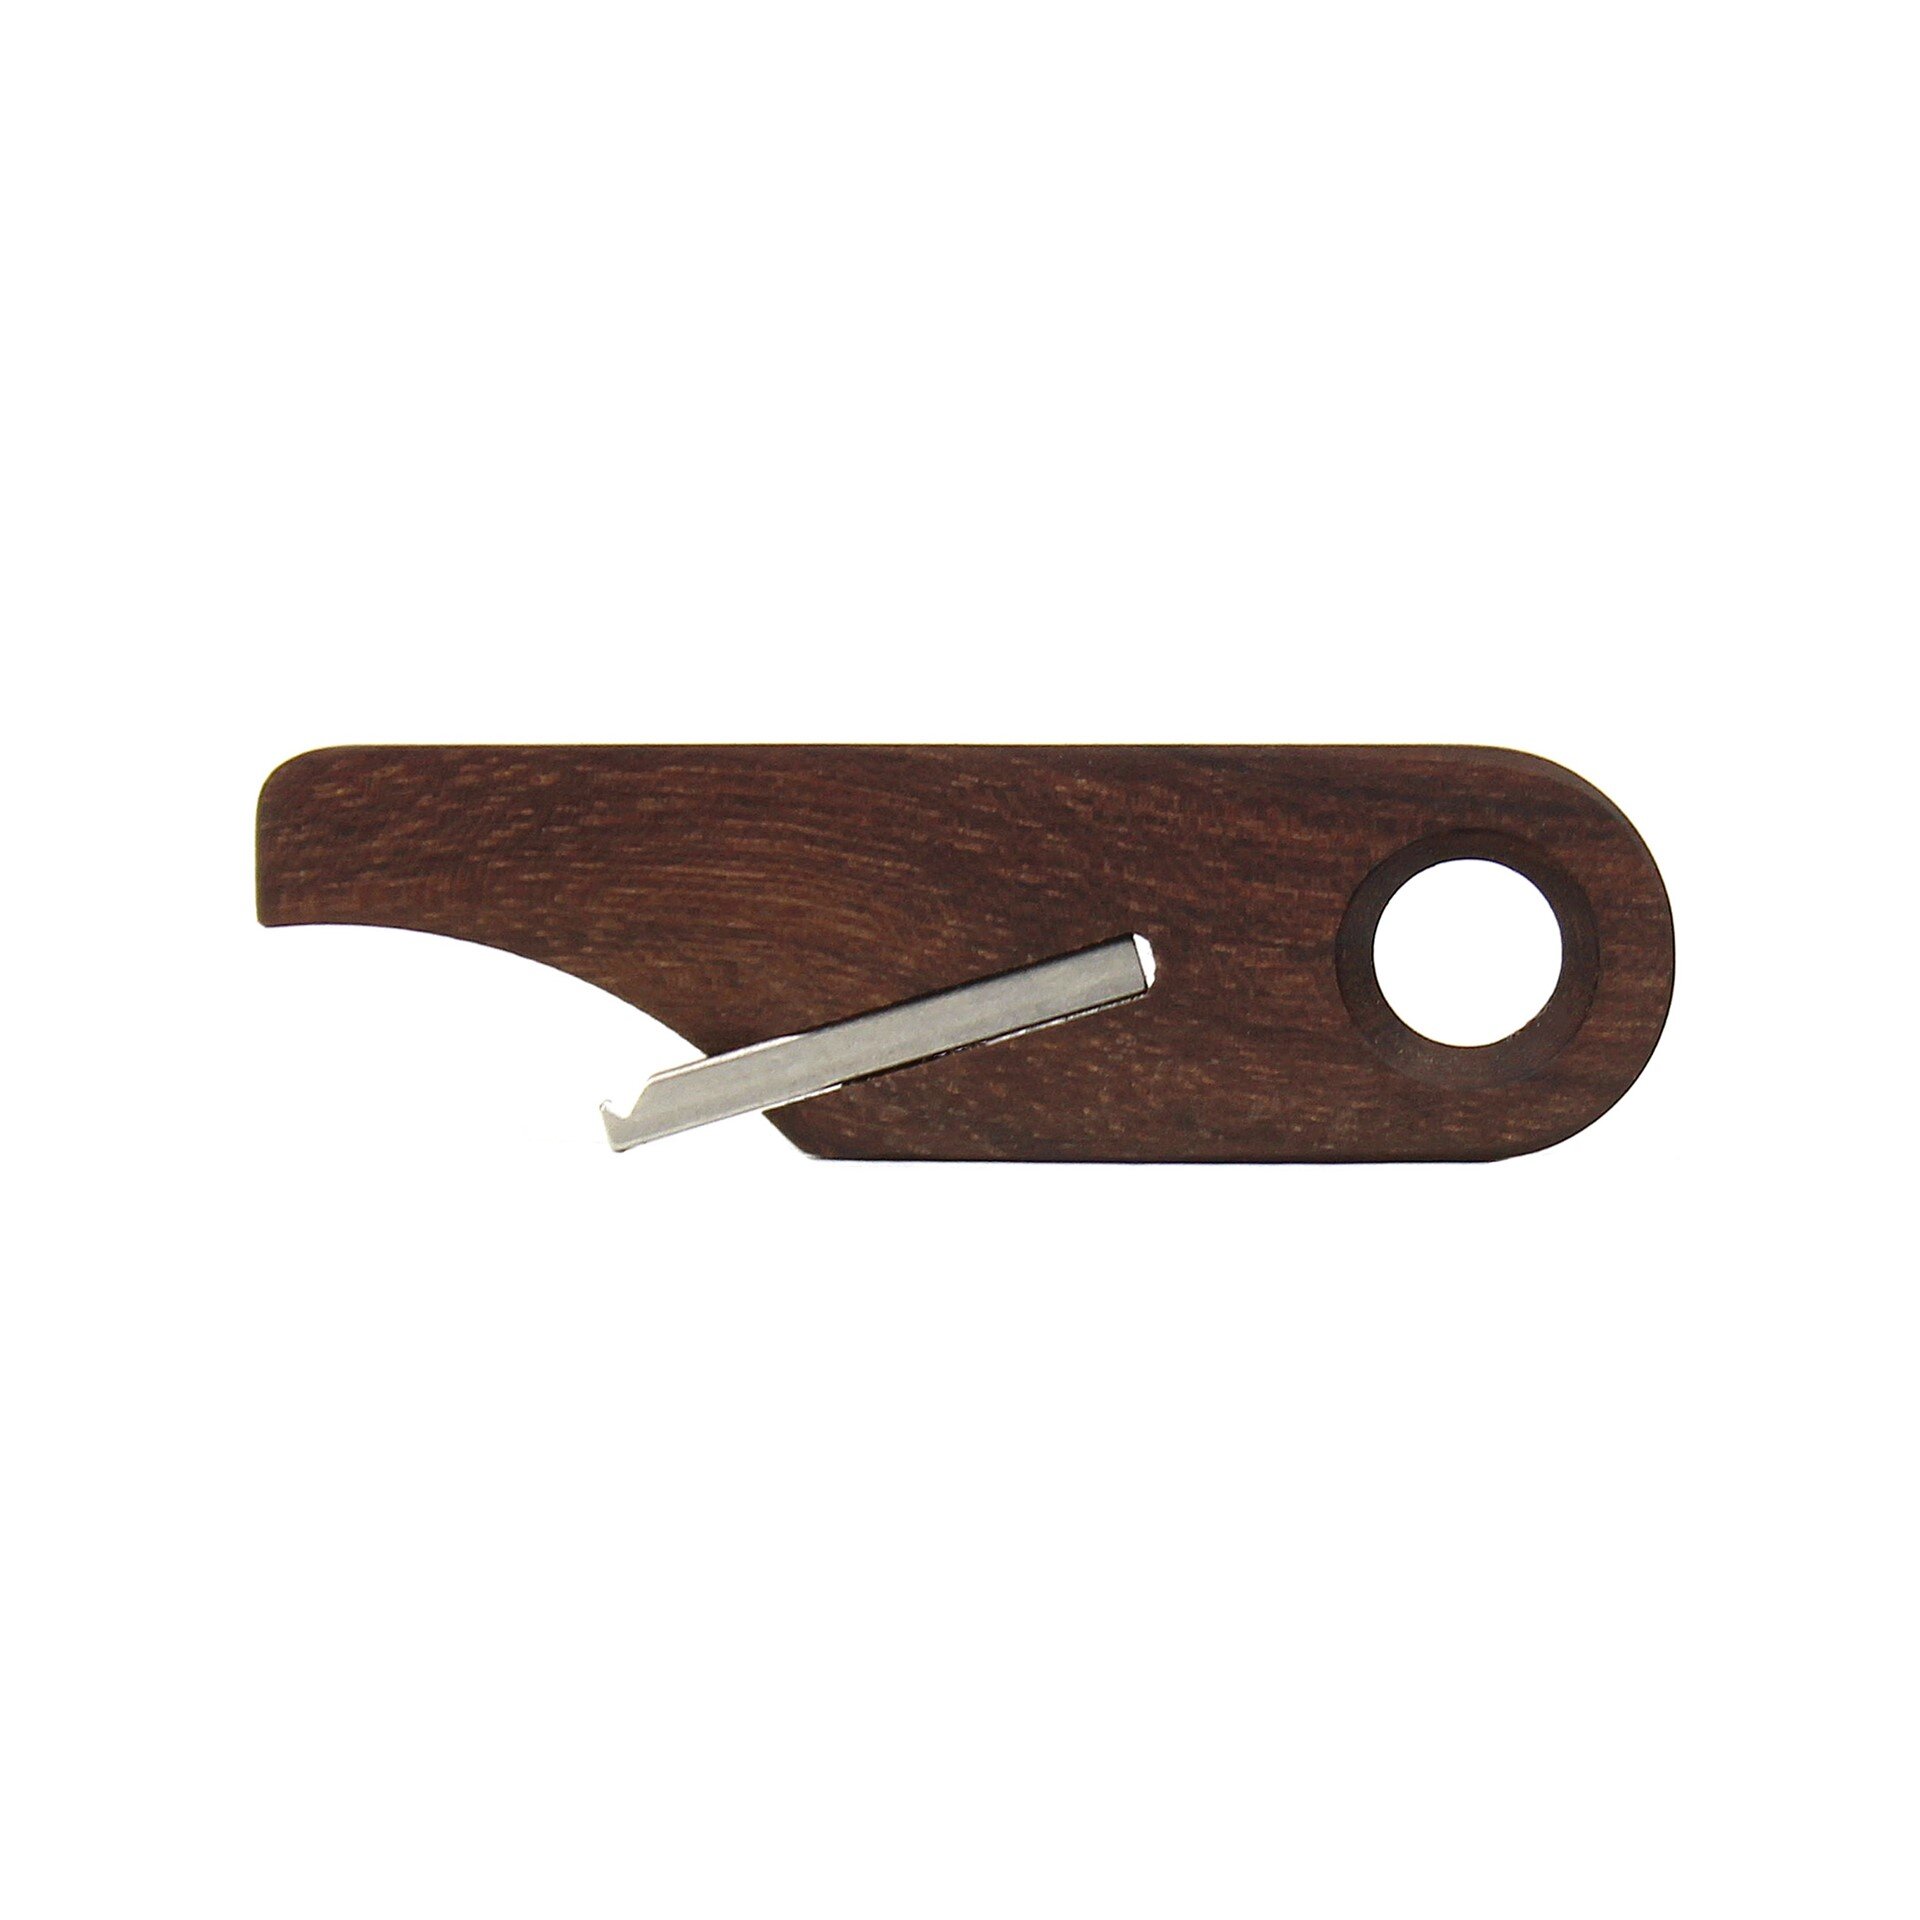 Wooden Bottle Opener Keychain by Rift Wood Company - Katalox.JPG